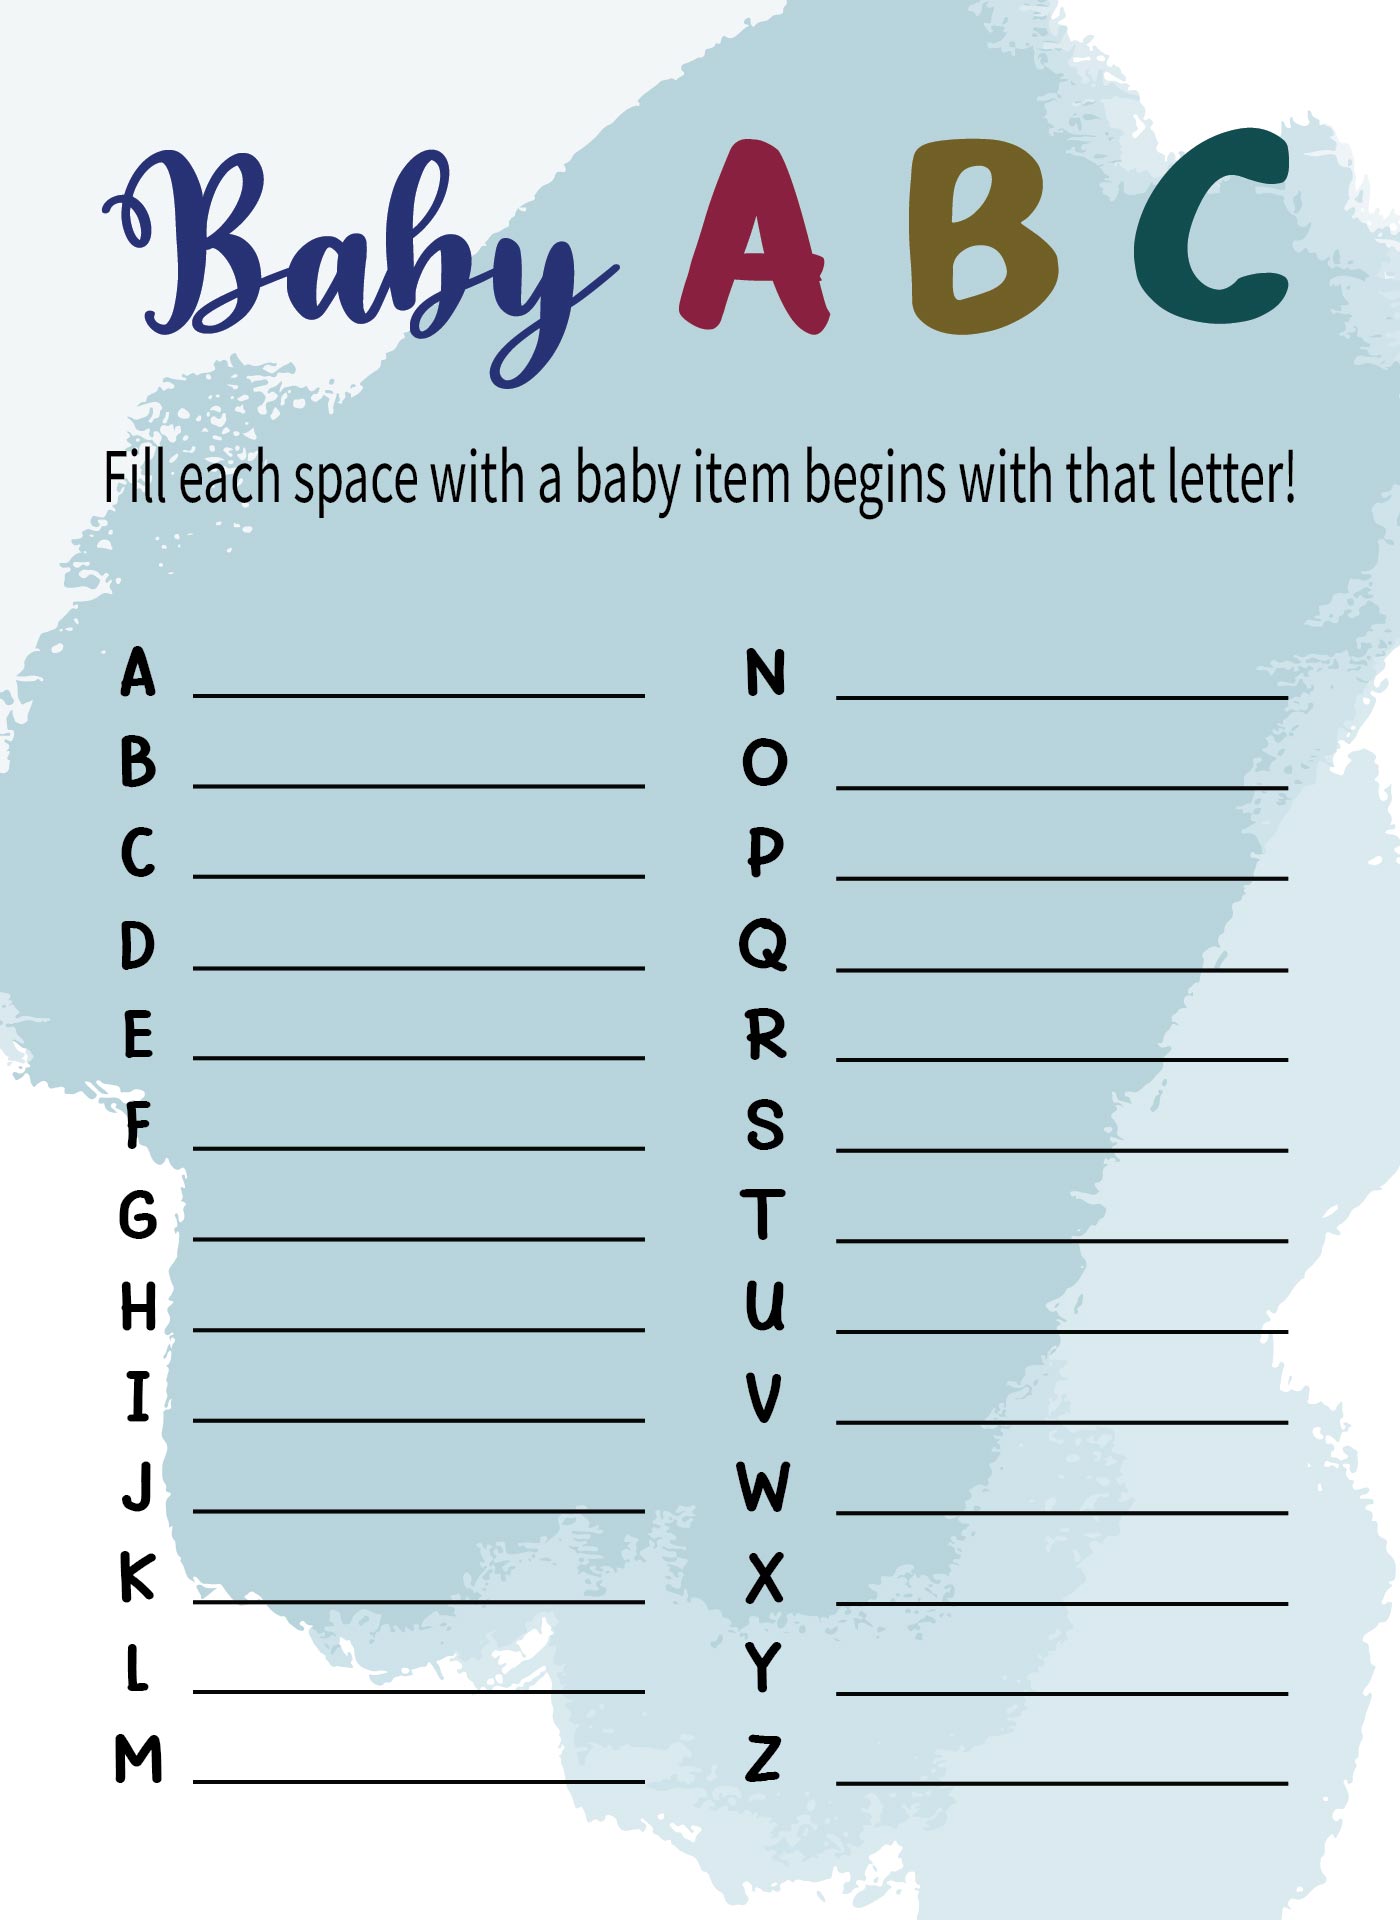 ABC Baby Shower Name Game Printable